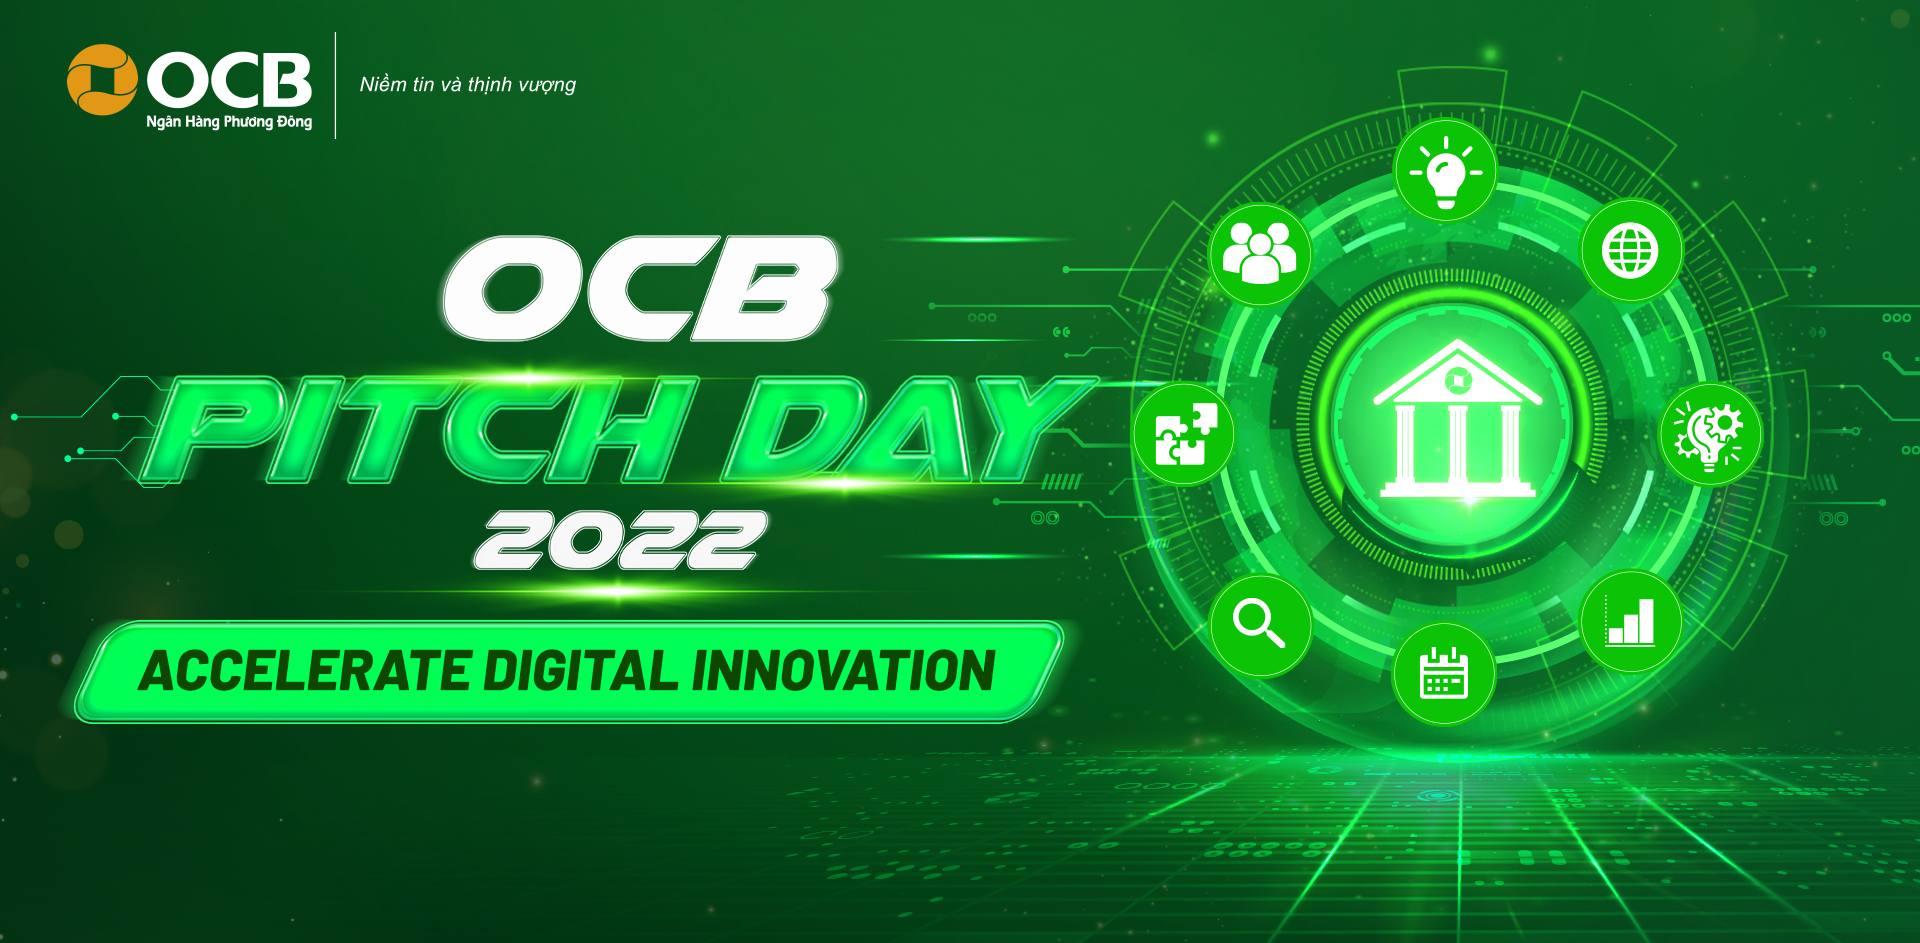 Đây là năm đầu tiên OCB tổ chức cuộc thi OCB Pitch Day 2022 quy mô toàn quốc.